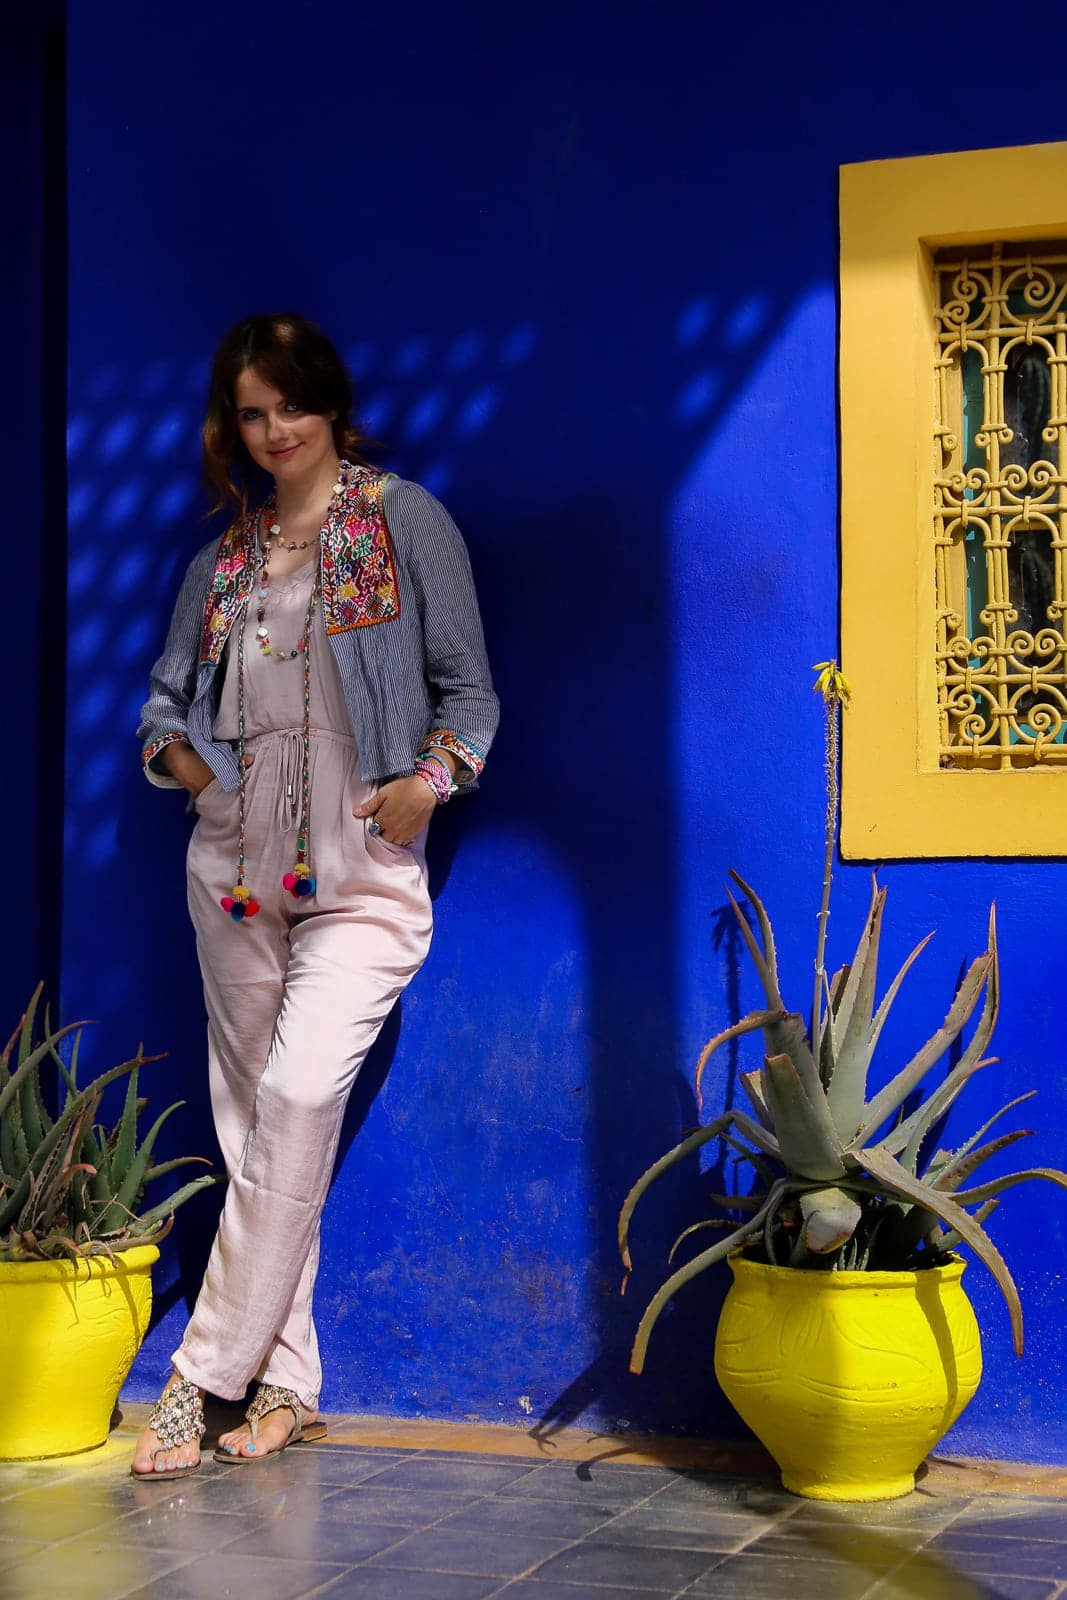 Traumhafte Orte in Marrakesch: Boho Outfit im berühmten Jardin Majorelle